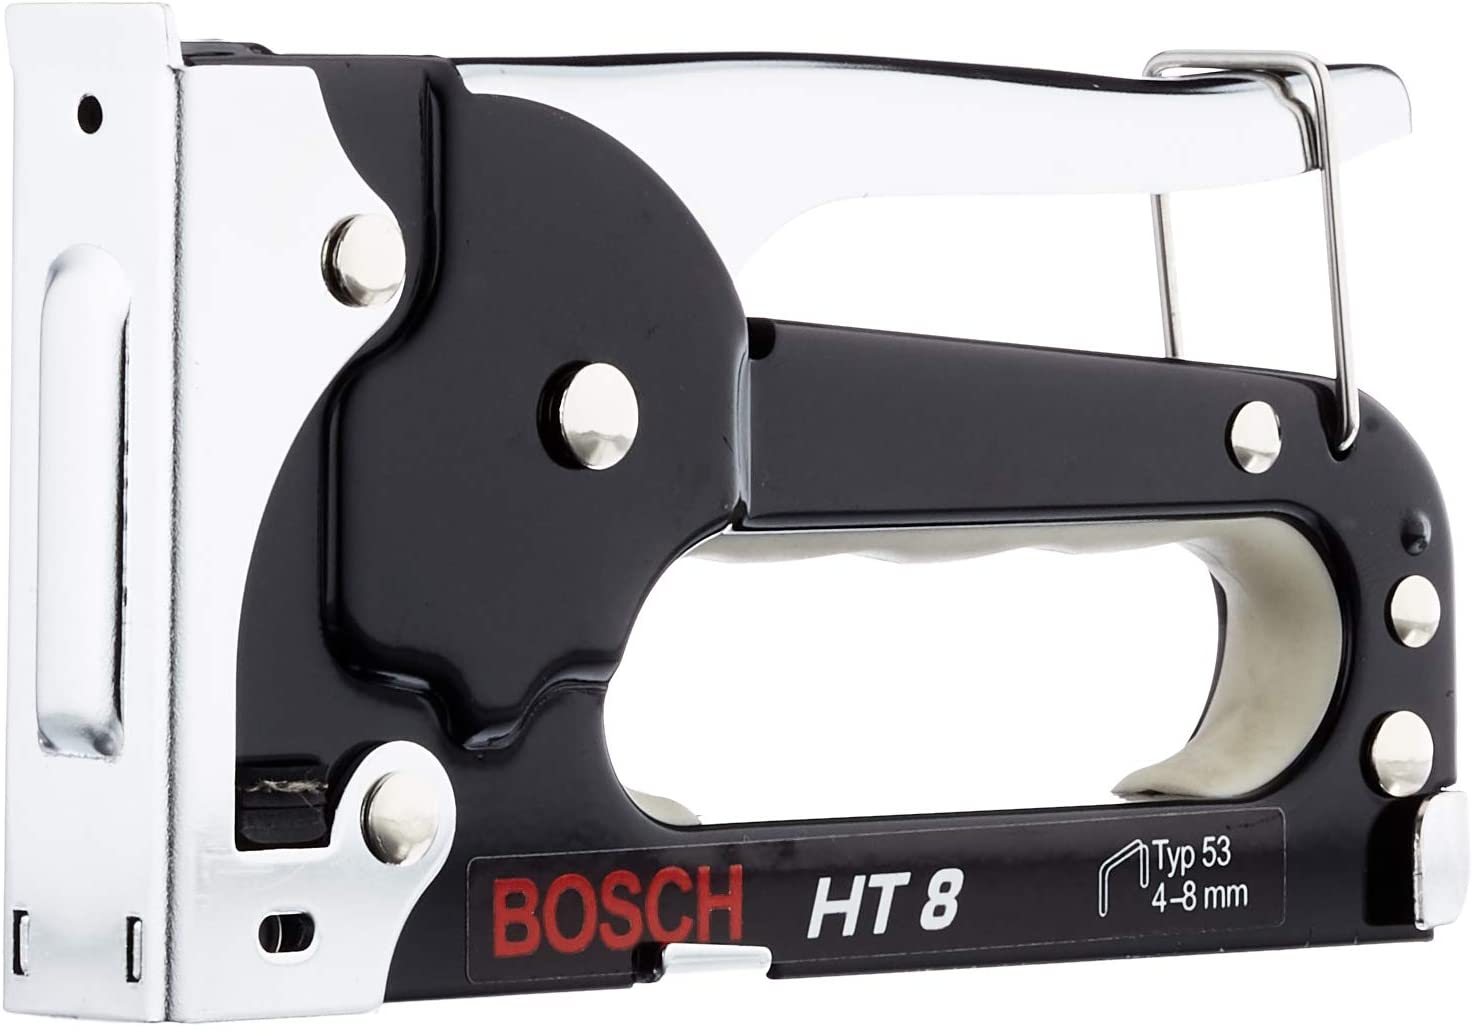 Bild zu Bosch Accessories Handtacker HT 8 (Klammertyp 53) für 10,60€ (Vergleich: 15,99€)